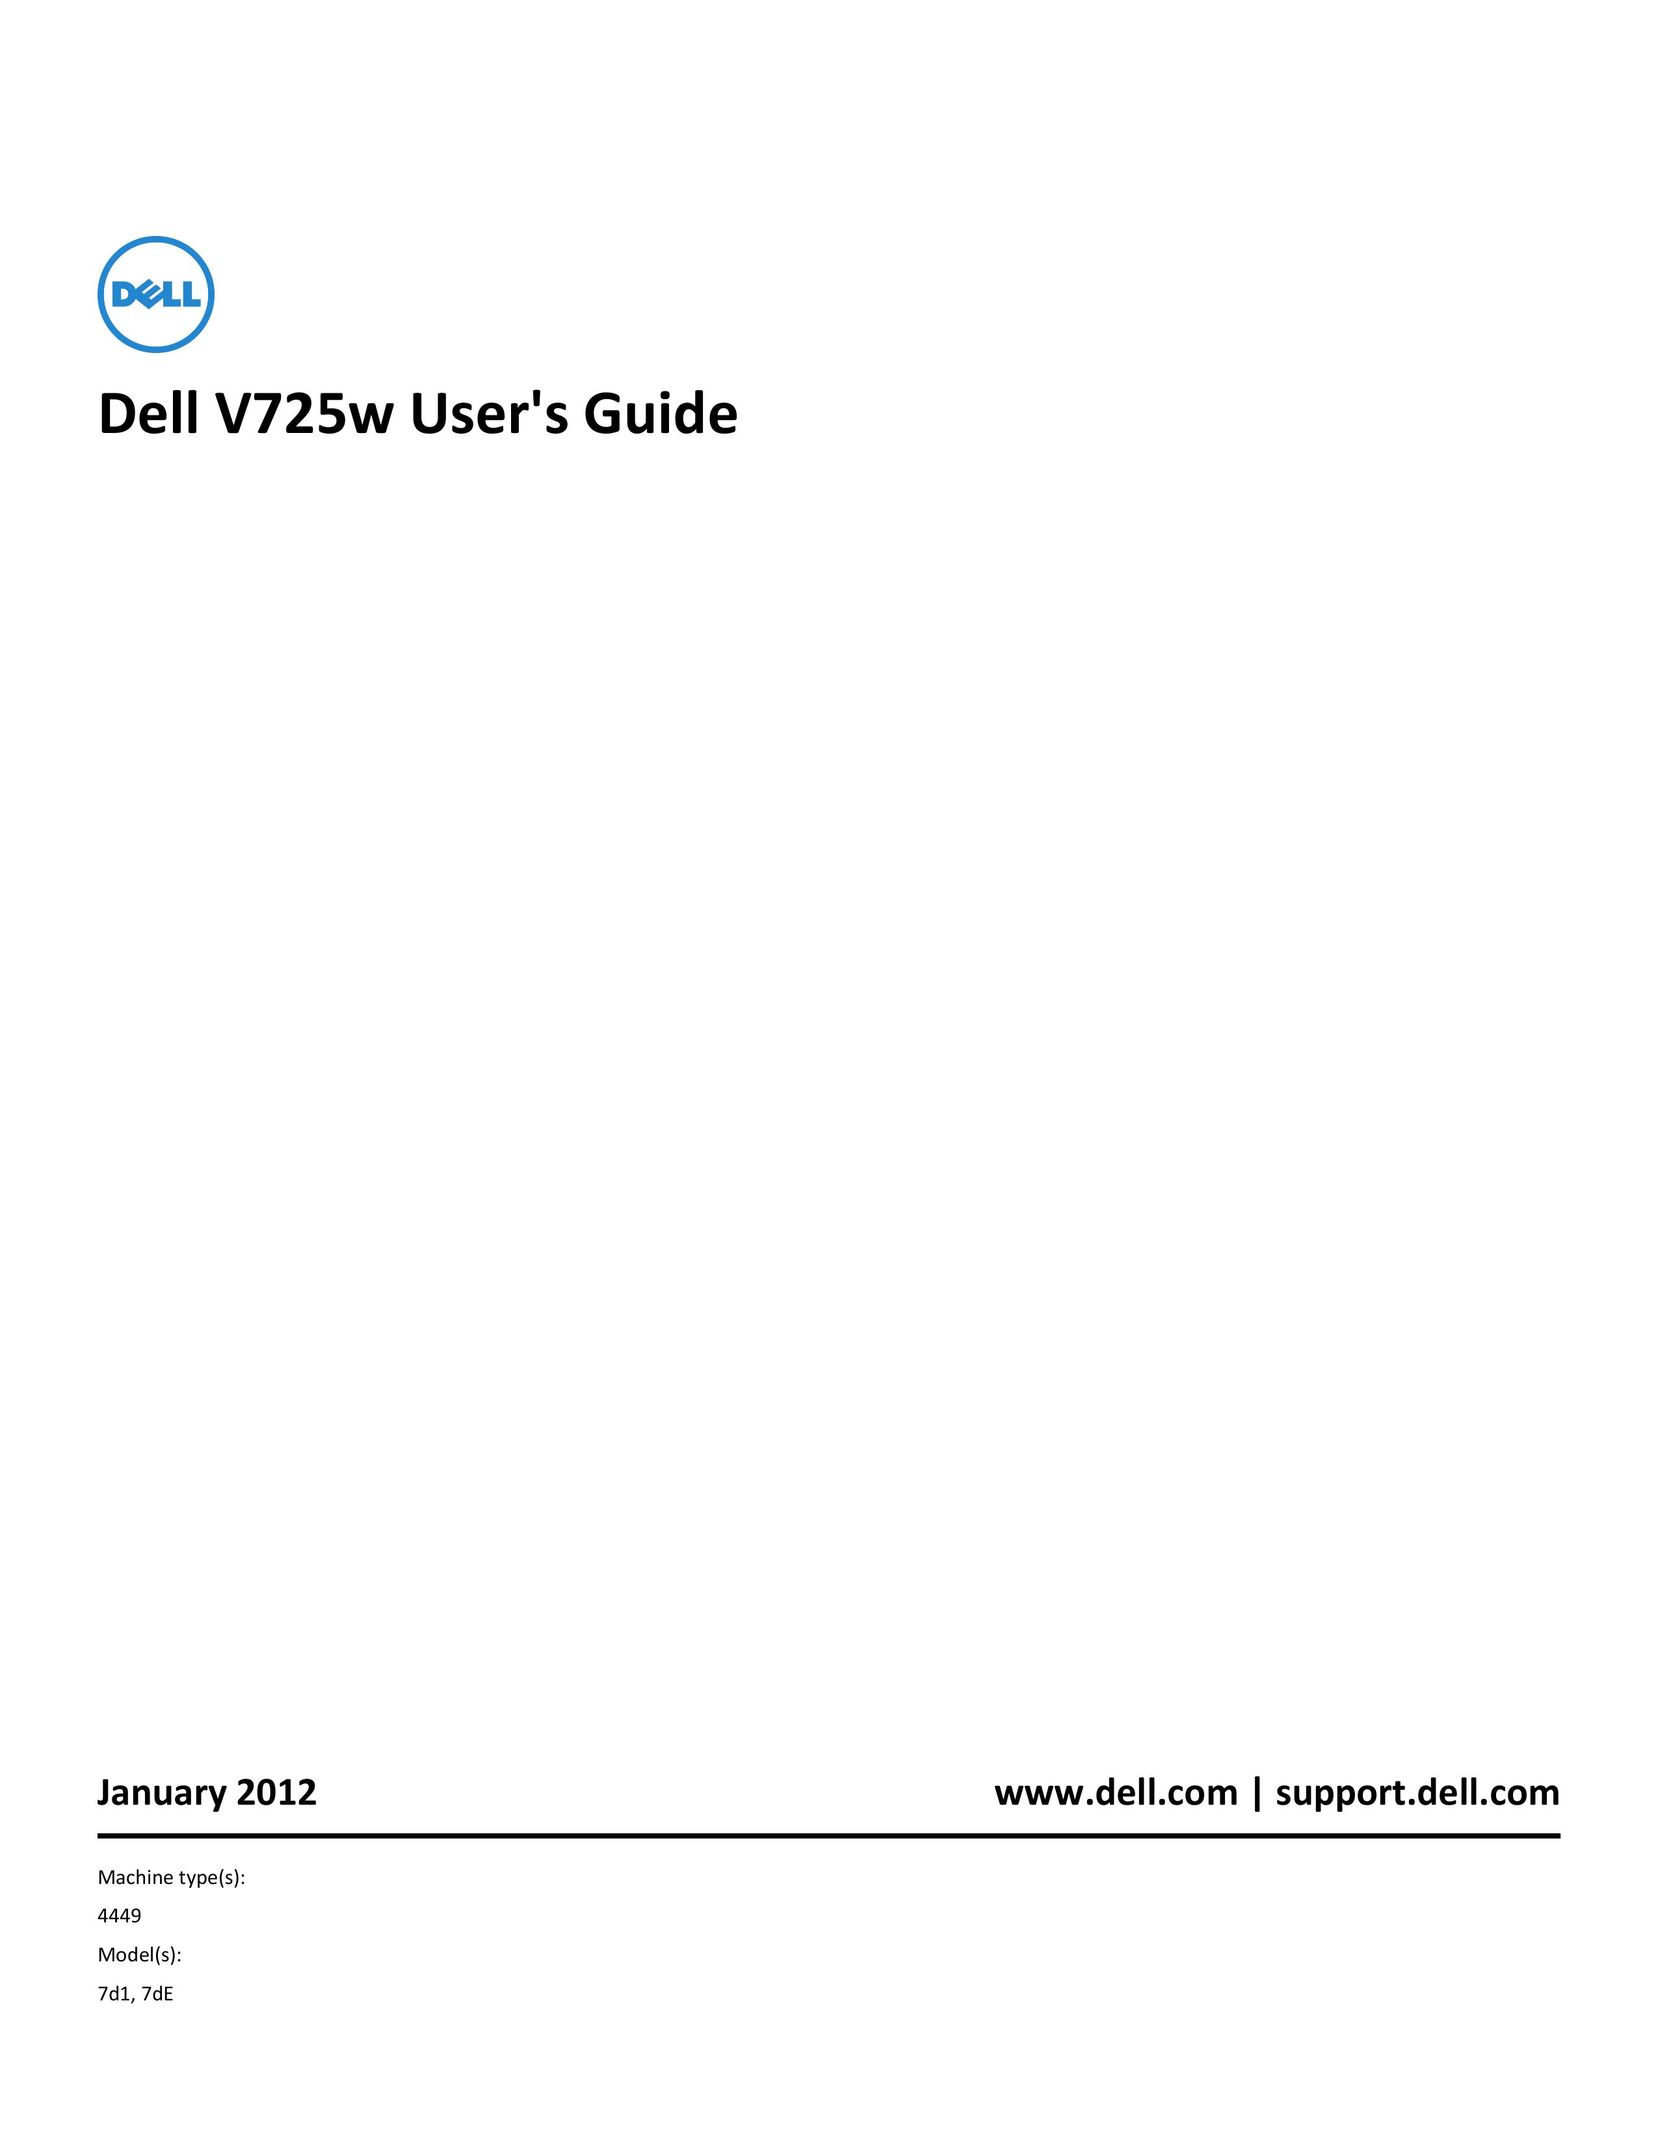 Dell 7dE All in One Printer User Manual